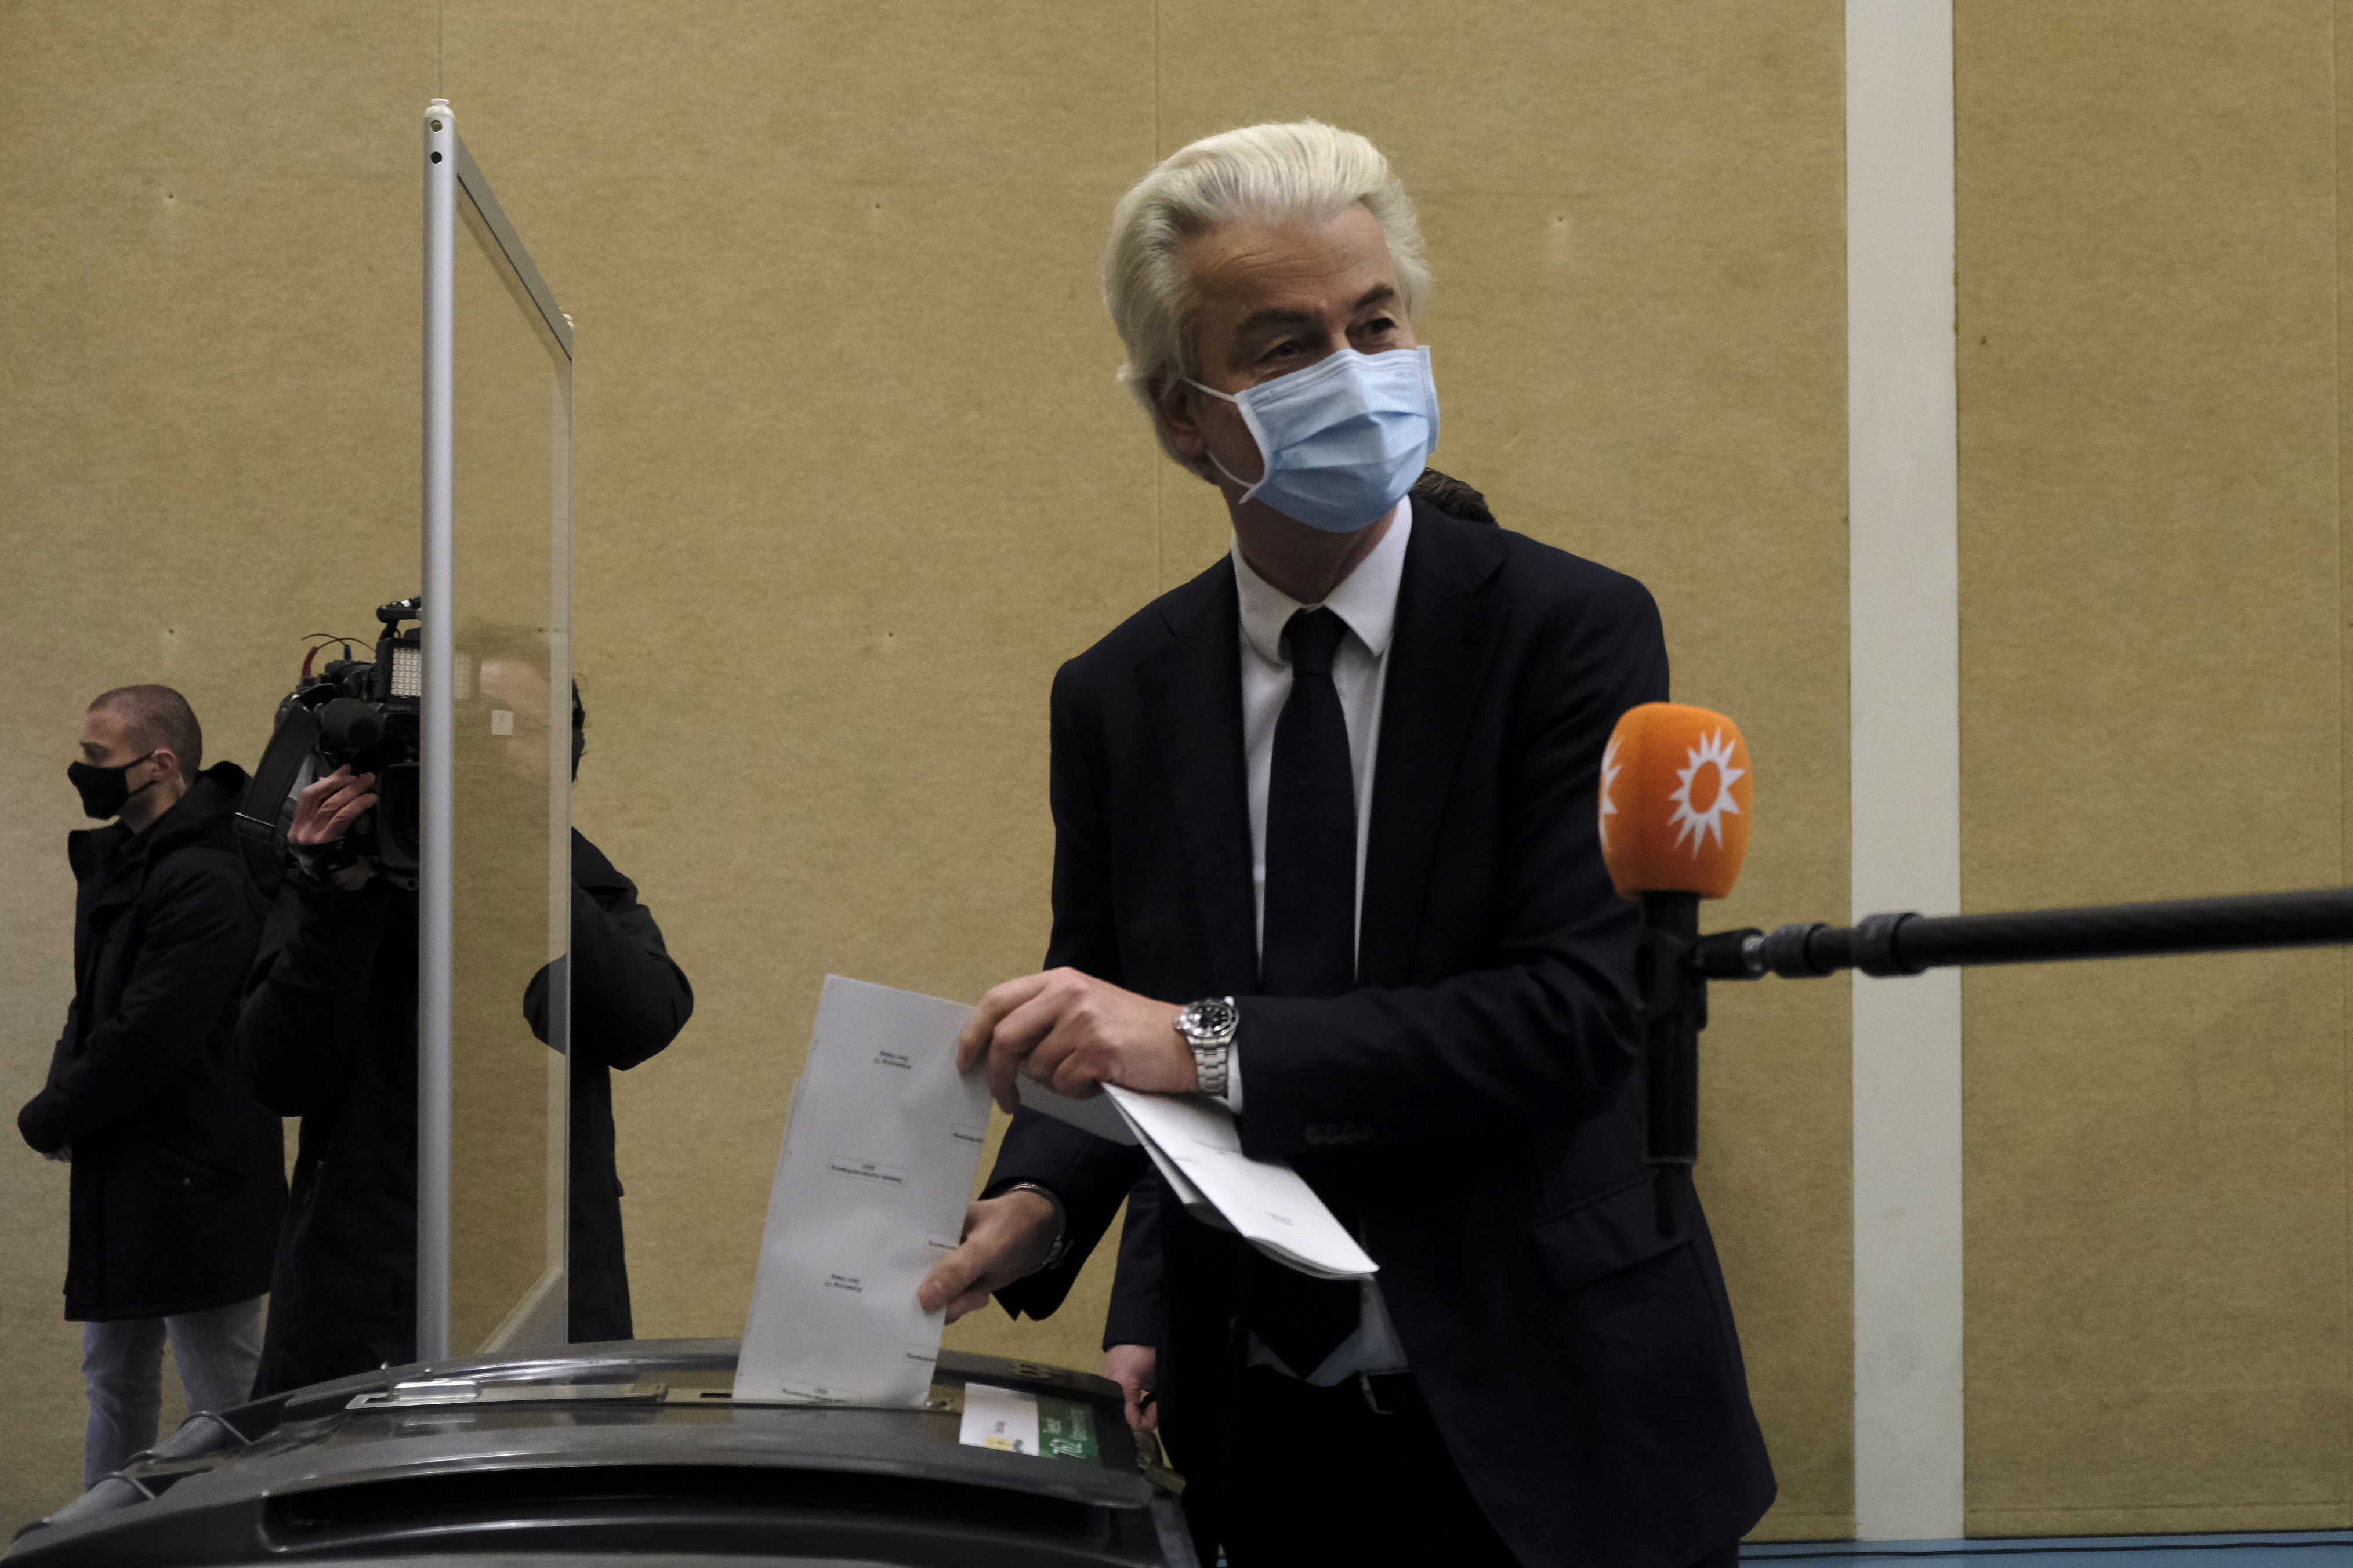 Geert Wilders casts his vote in The Hague